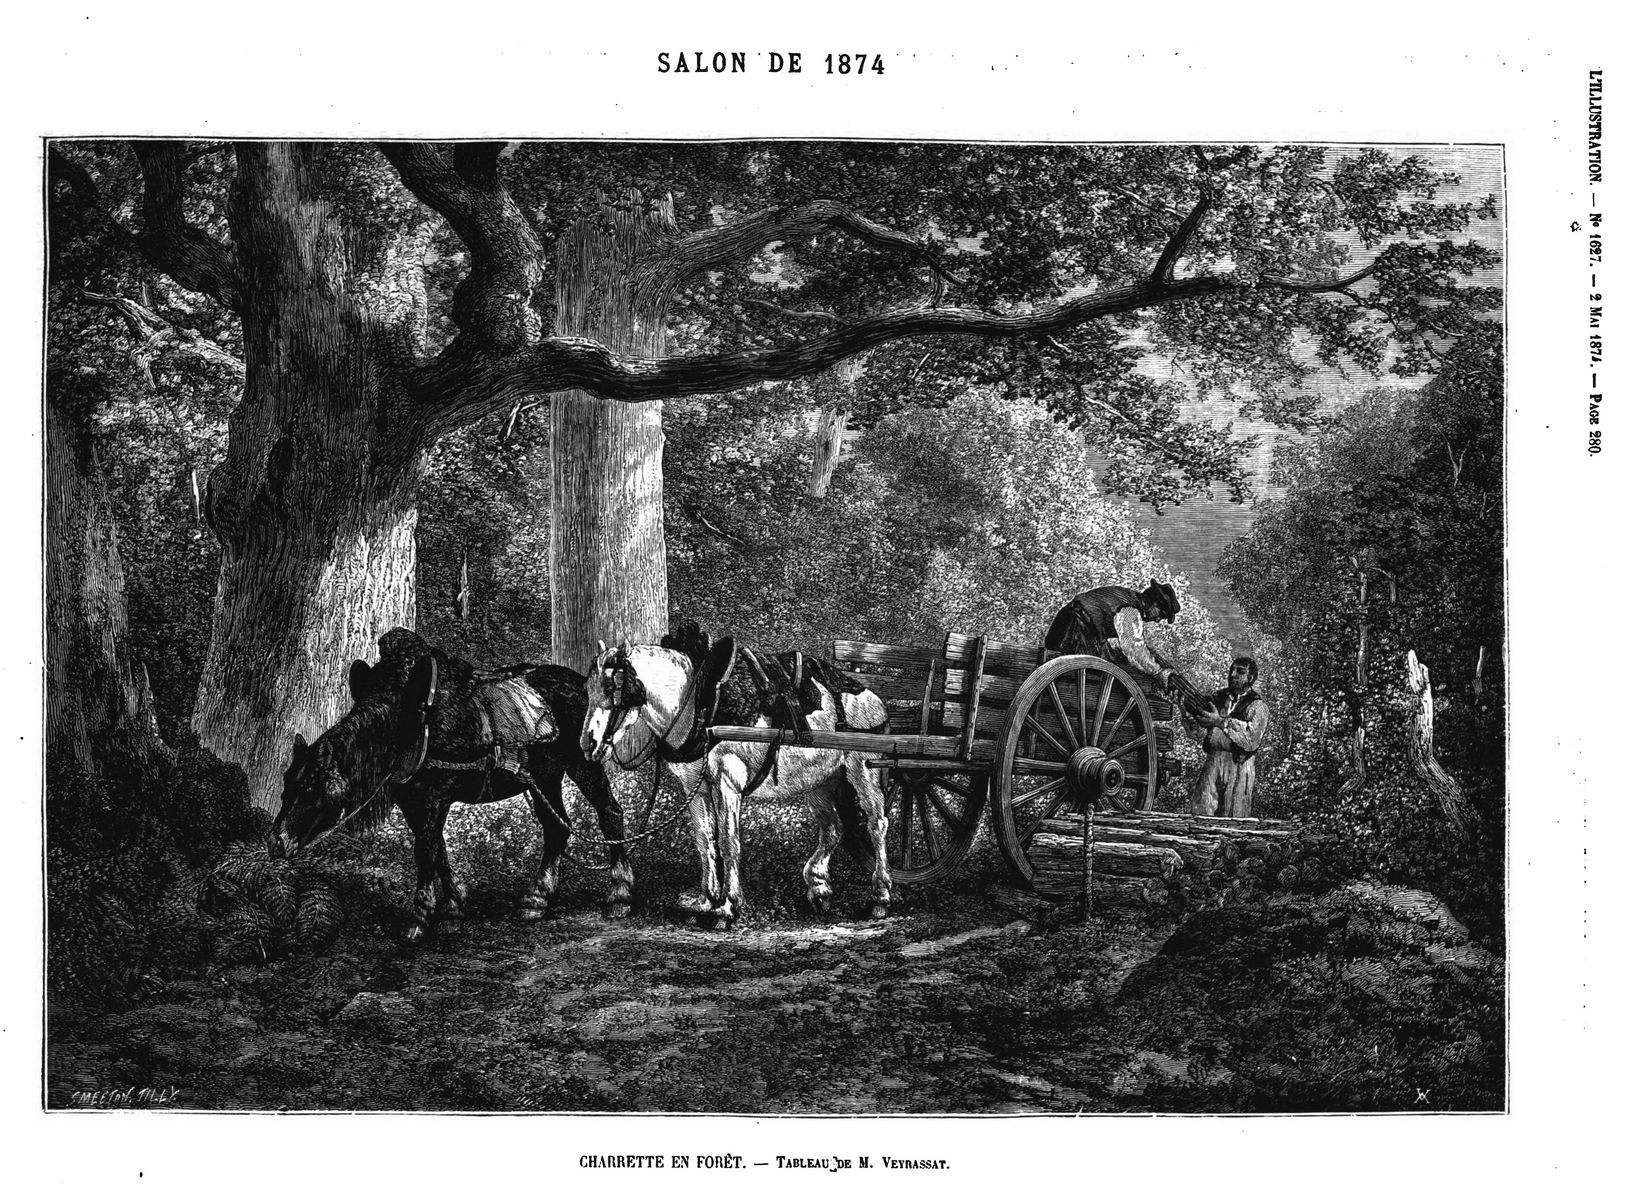 Salon de 1871 : Charrette en forêt, tabl au de M. Veyrassat; (gravure 1874)